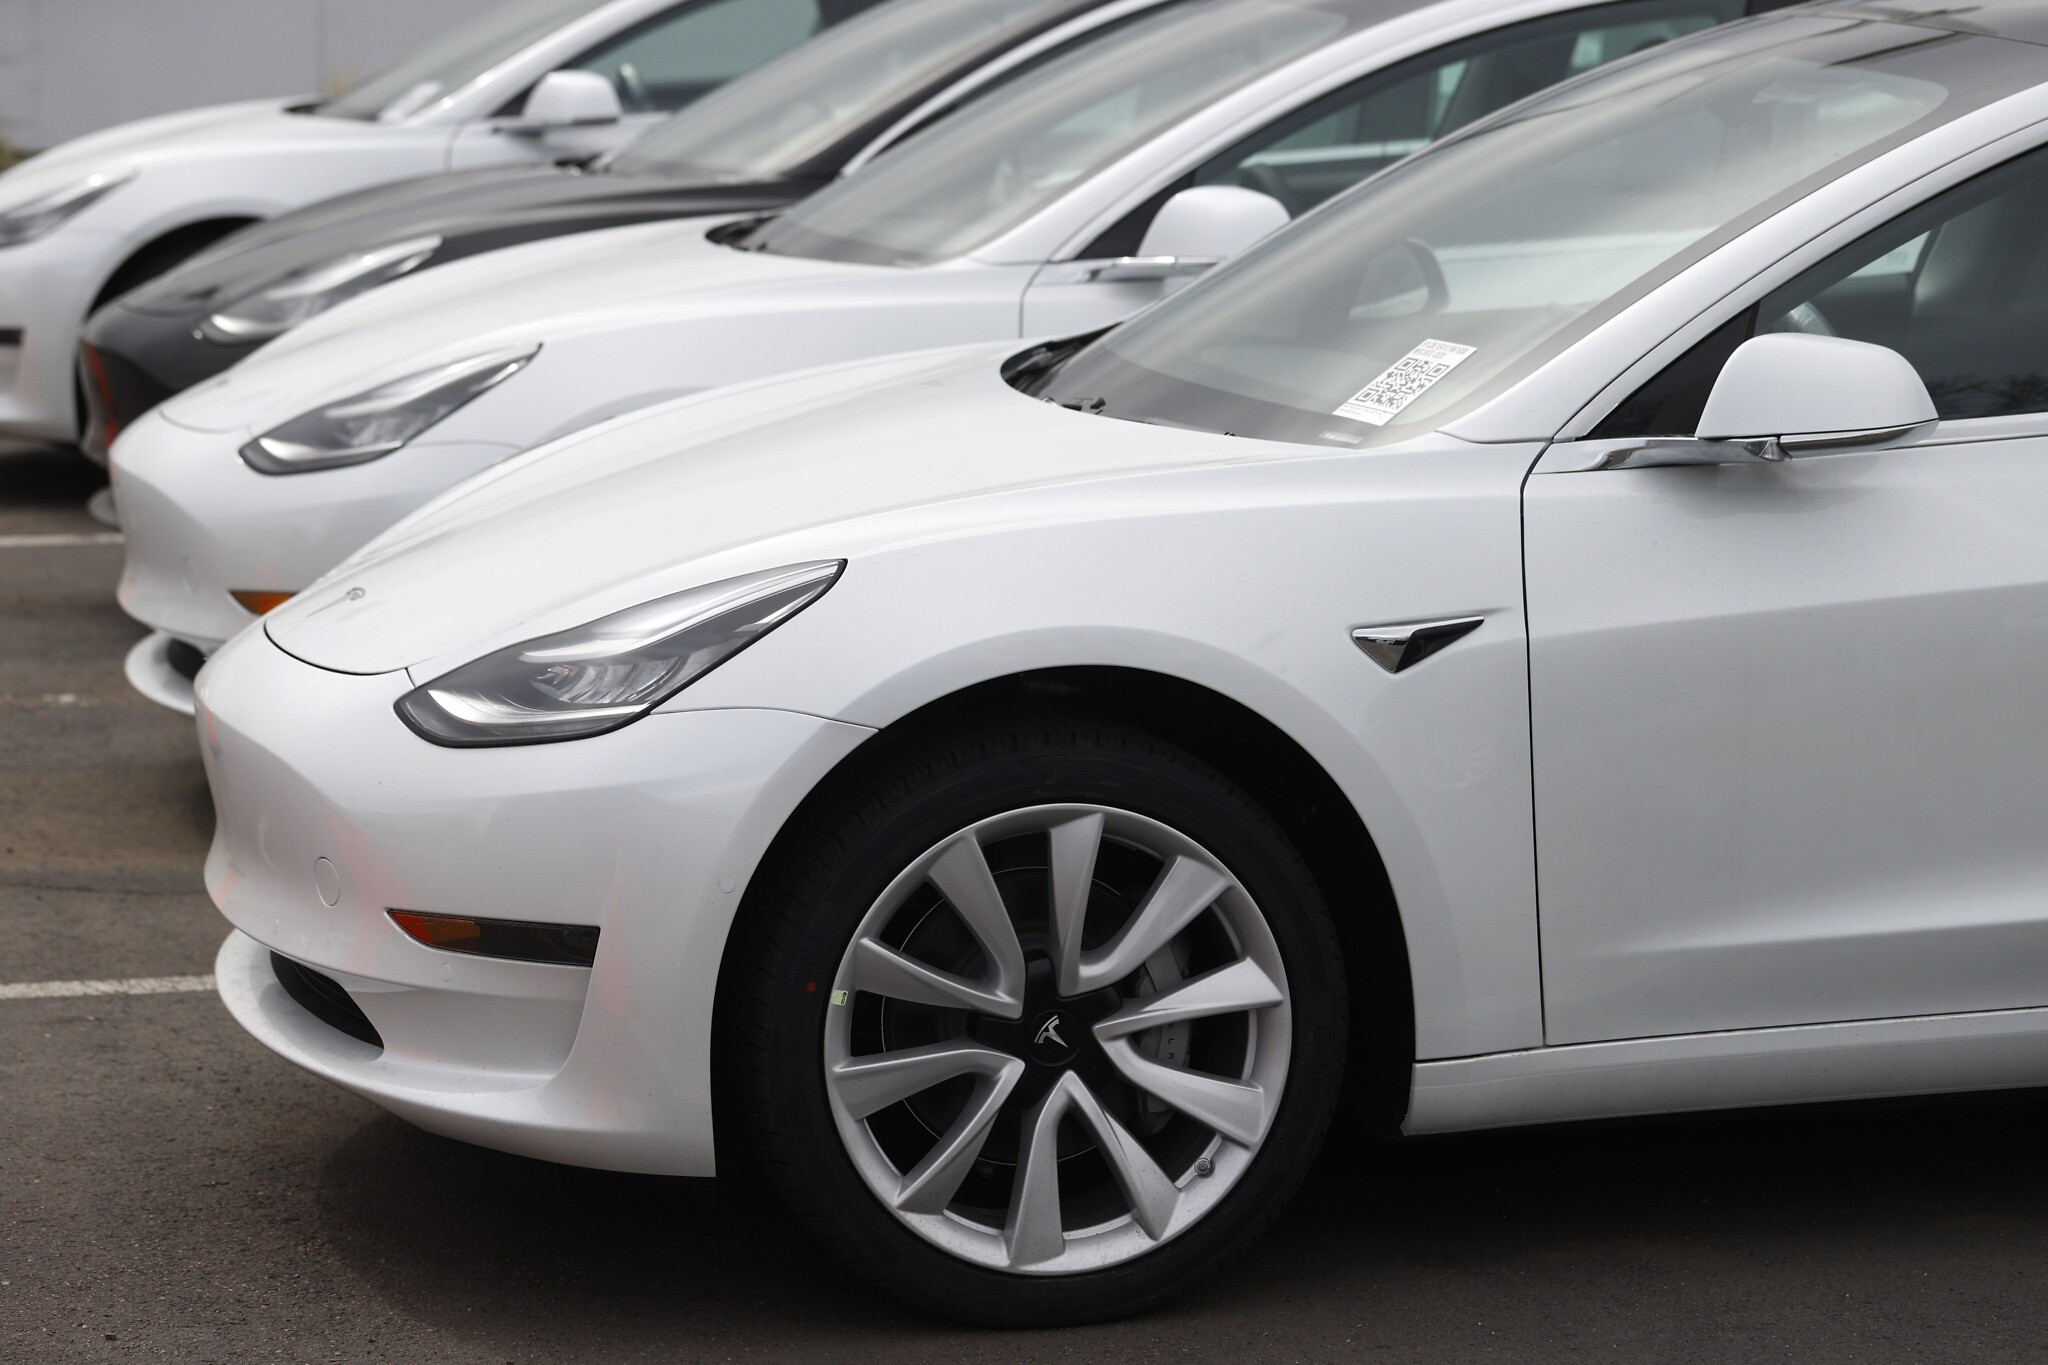 Tesla ouvre la vente de voitures électriques en Israël, moins chères que  prévu - The Times of Israël